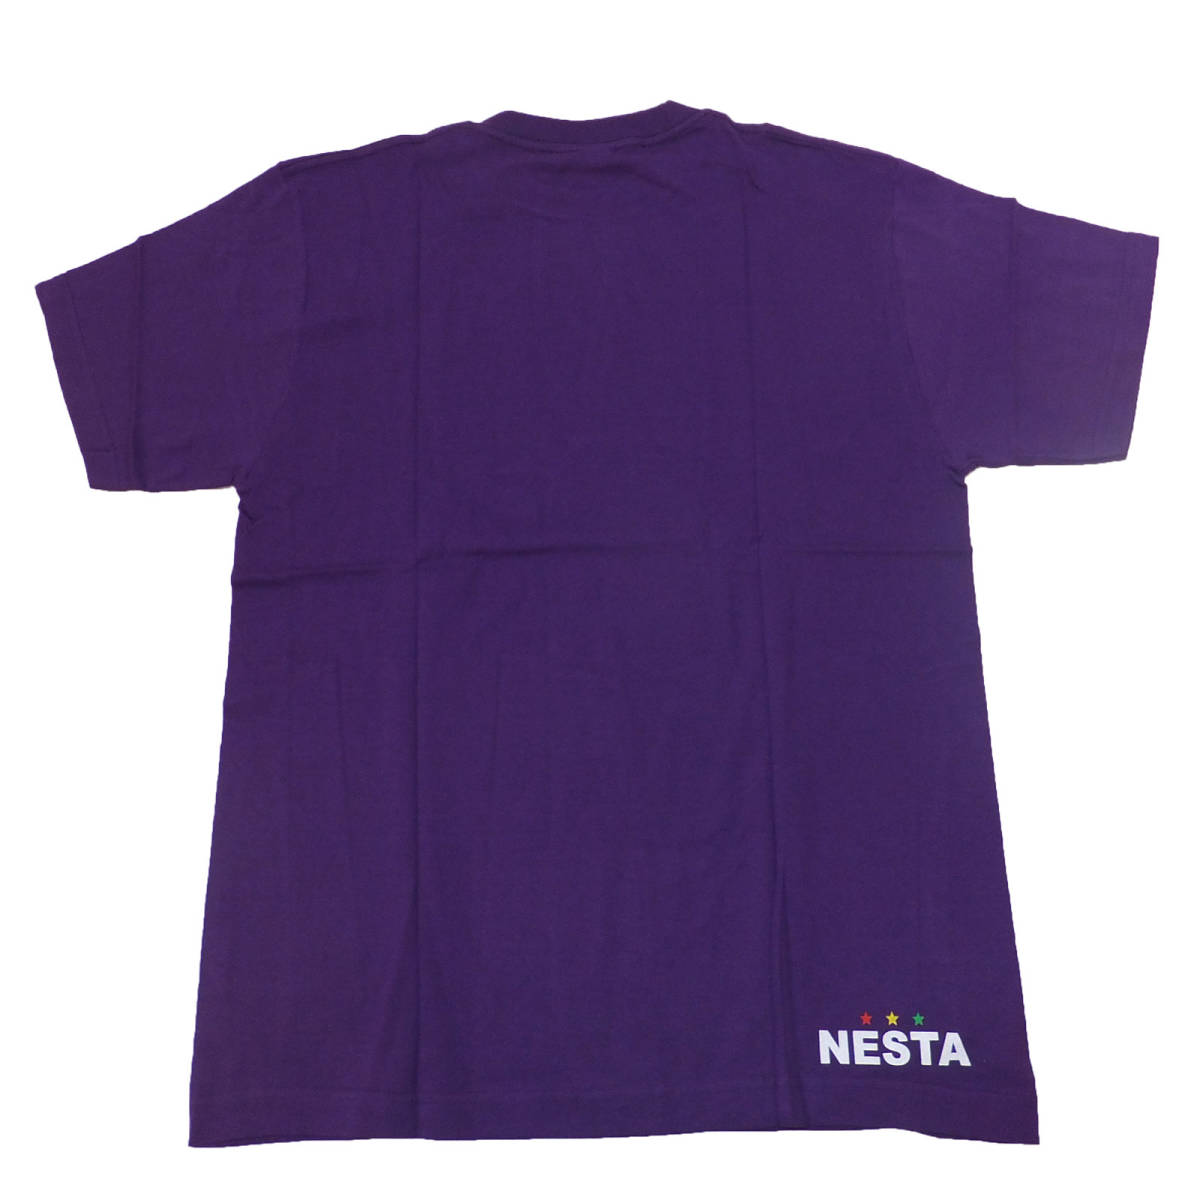 【送料無料】新品NESTA BRAND Tシャツ ネスタブランド正規品C-52 Lサイズ レゲエ ヒップホップ ダンス ストリート系 ライオン_画像2